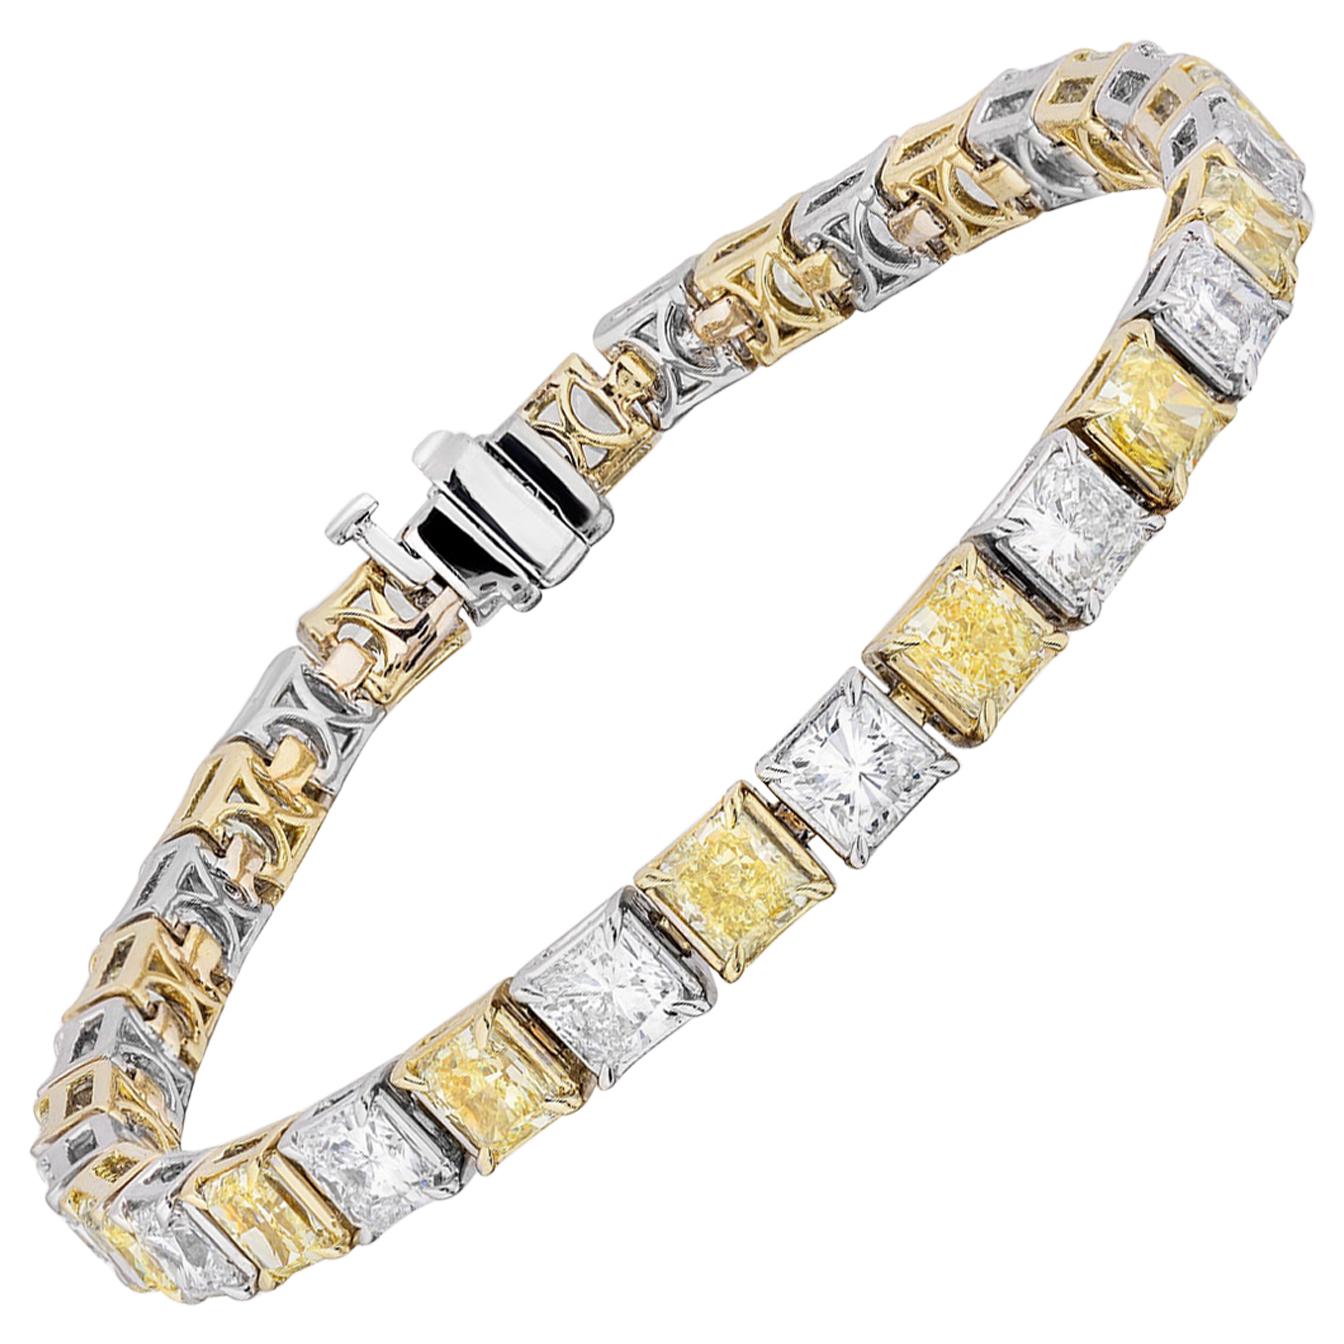 Bracelet de diamants jaunes et blancs en forme d'adiant de 16,55 carats